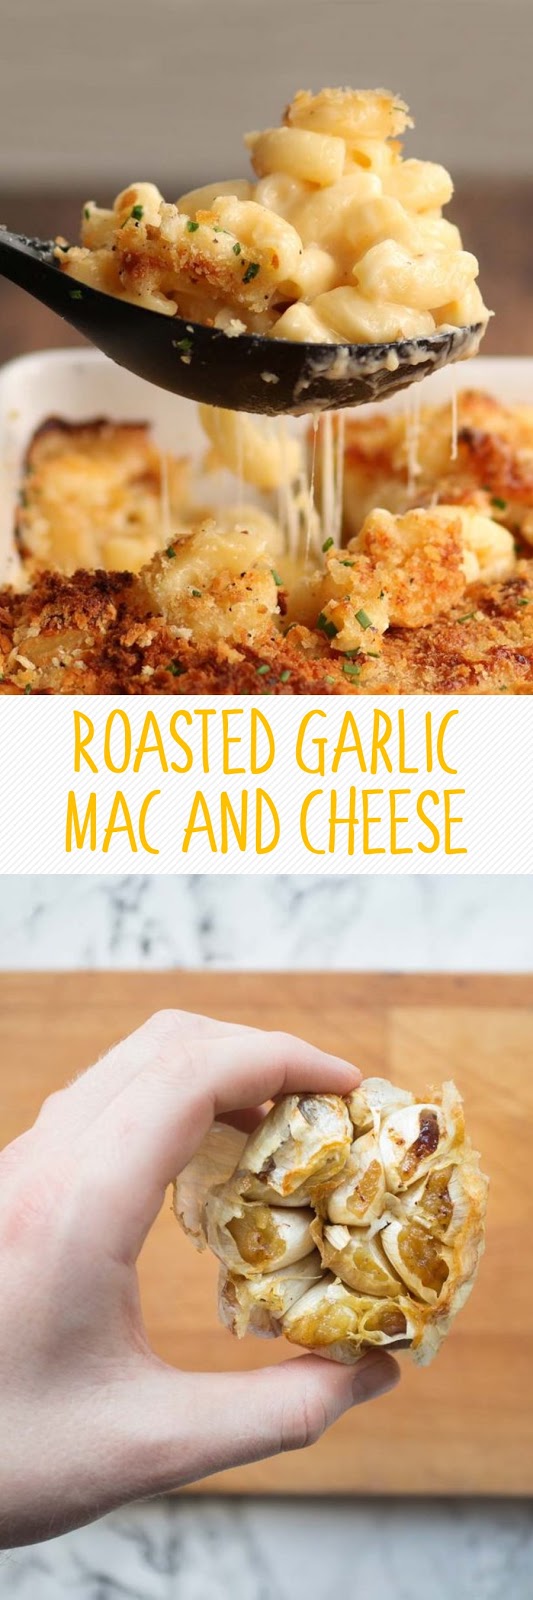 Roasted Garlic Mac and Cheese